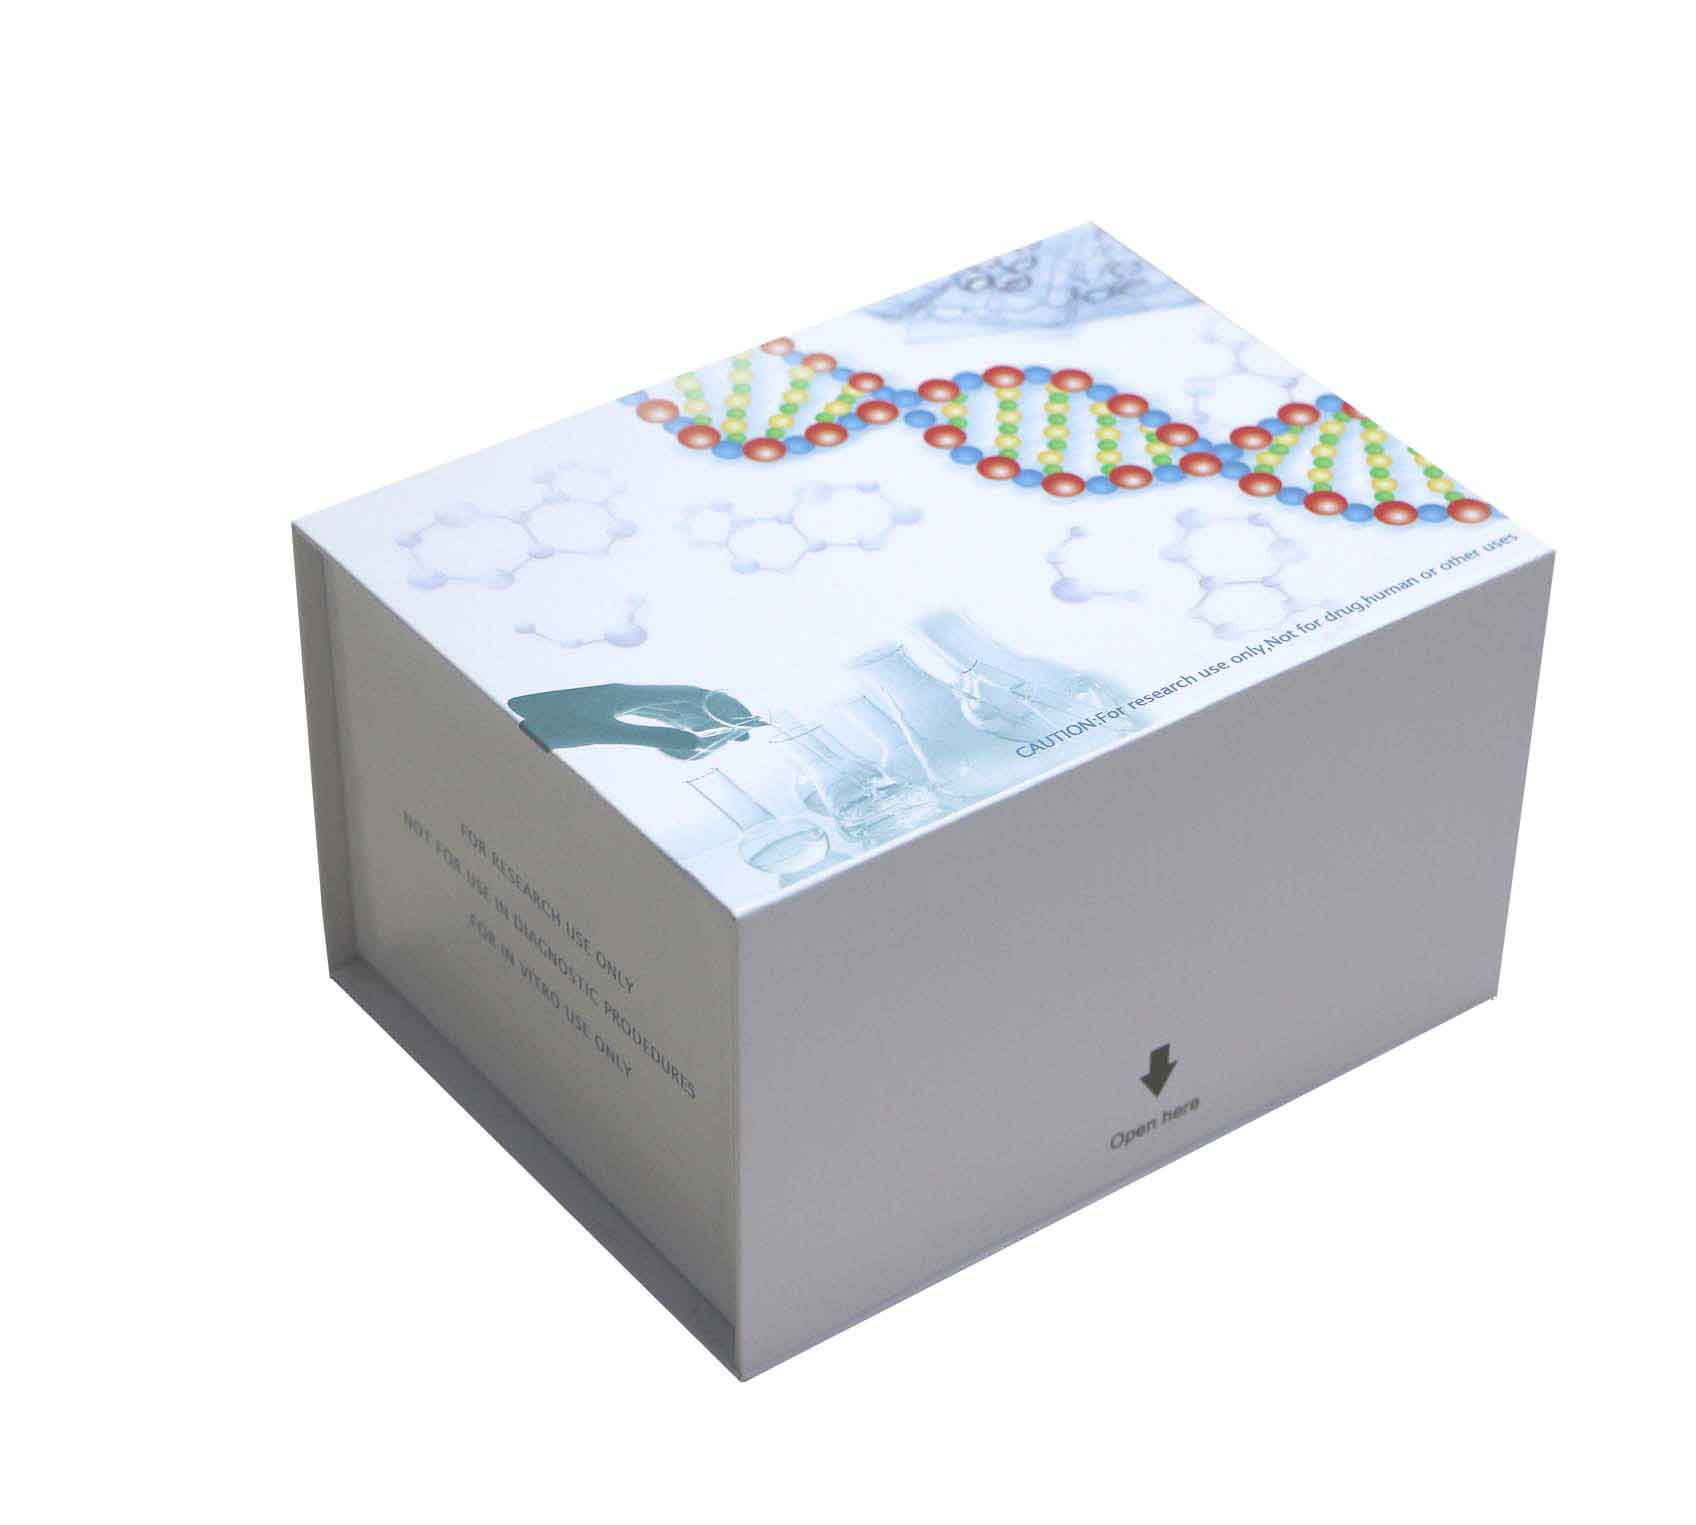 人雄激素结合蛋白(ABP)ELISA试剂盒